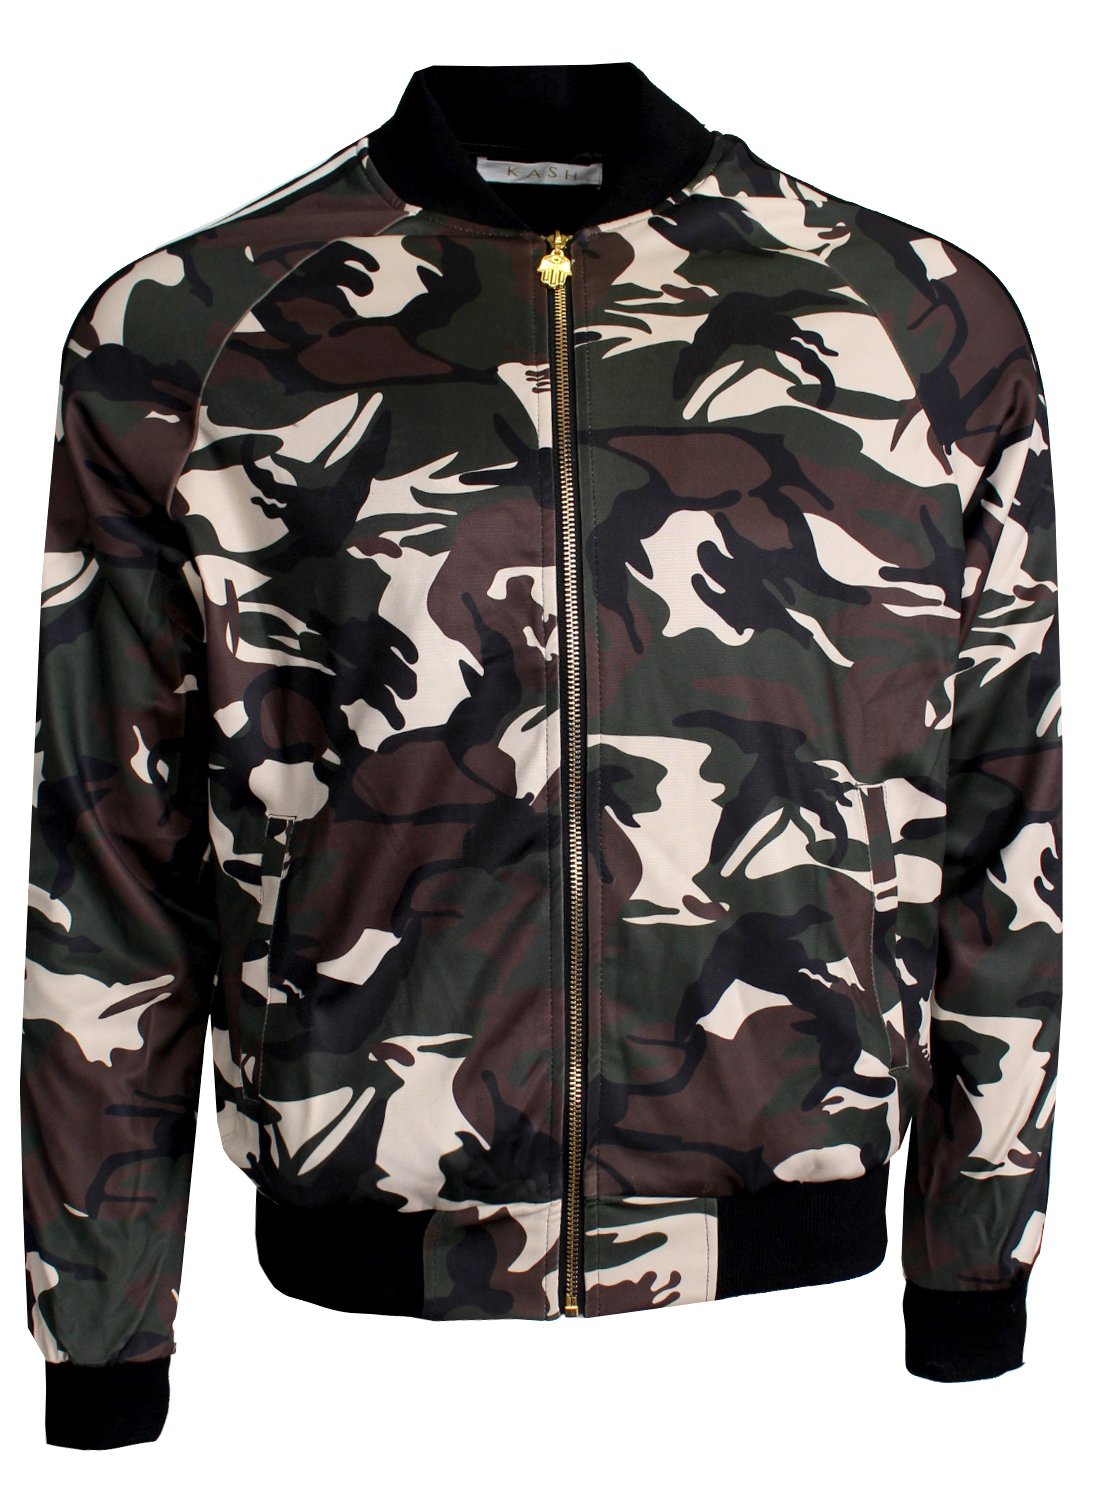 KASH Camouflage Track Jacket